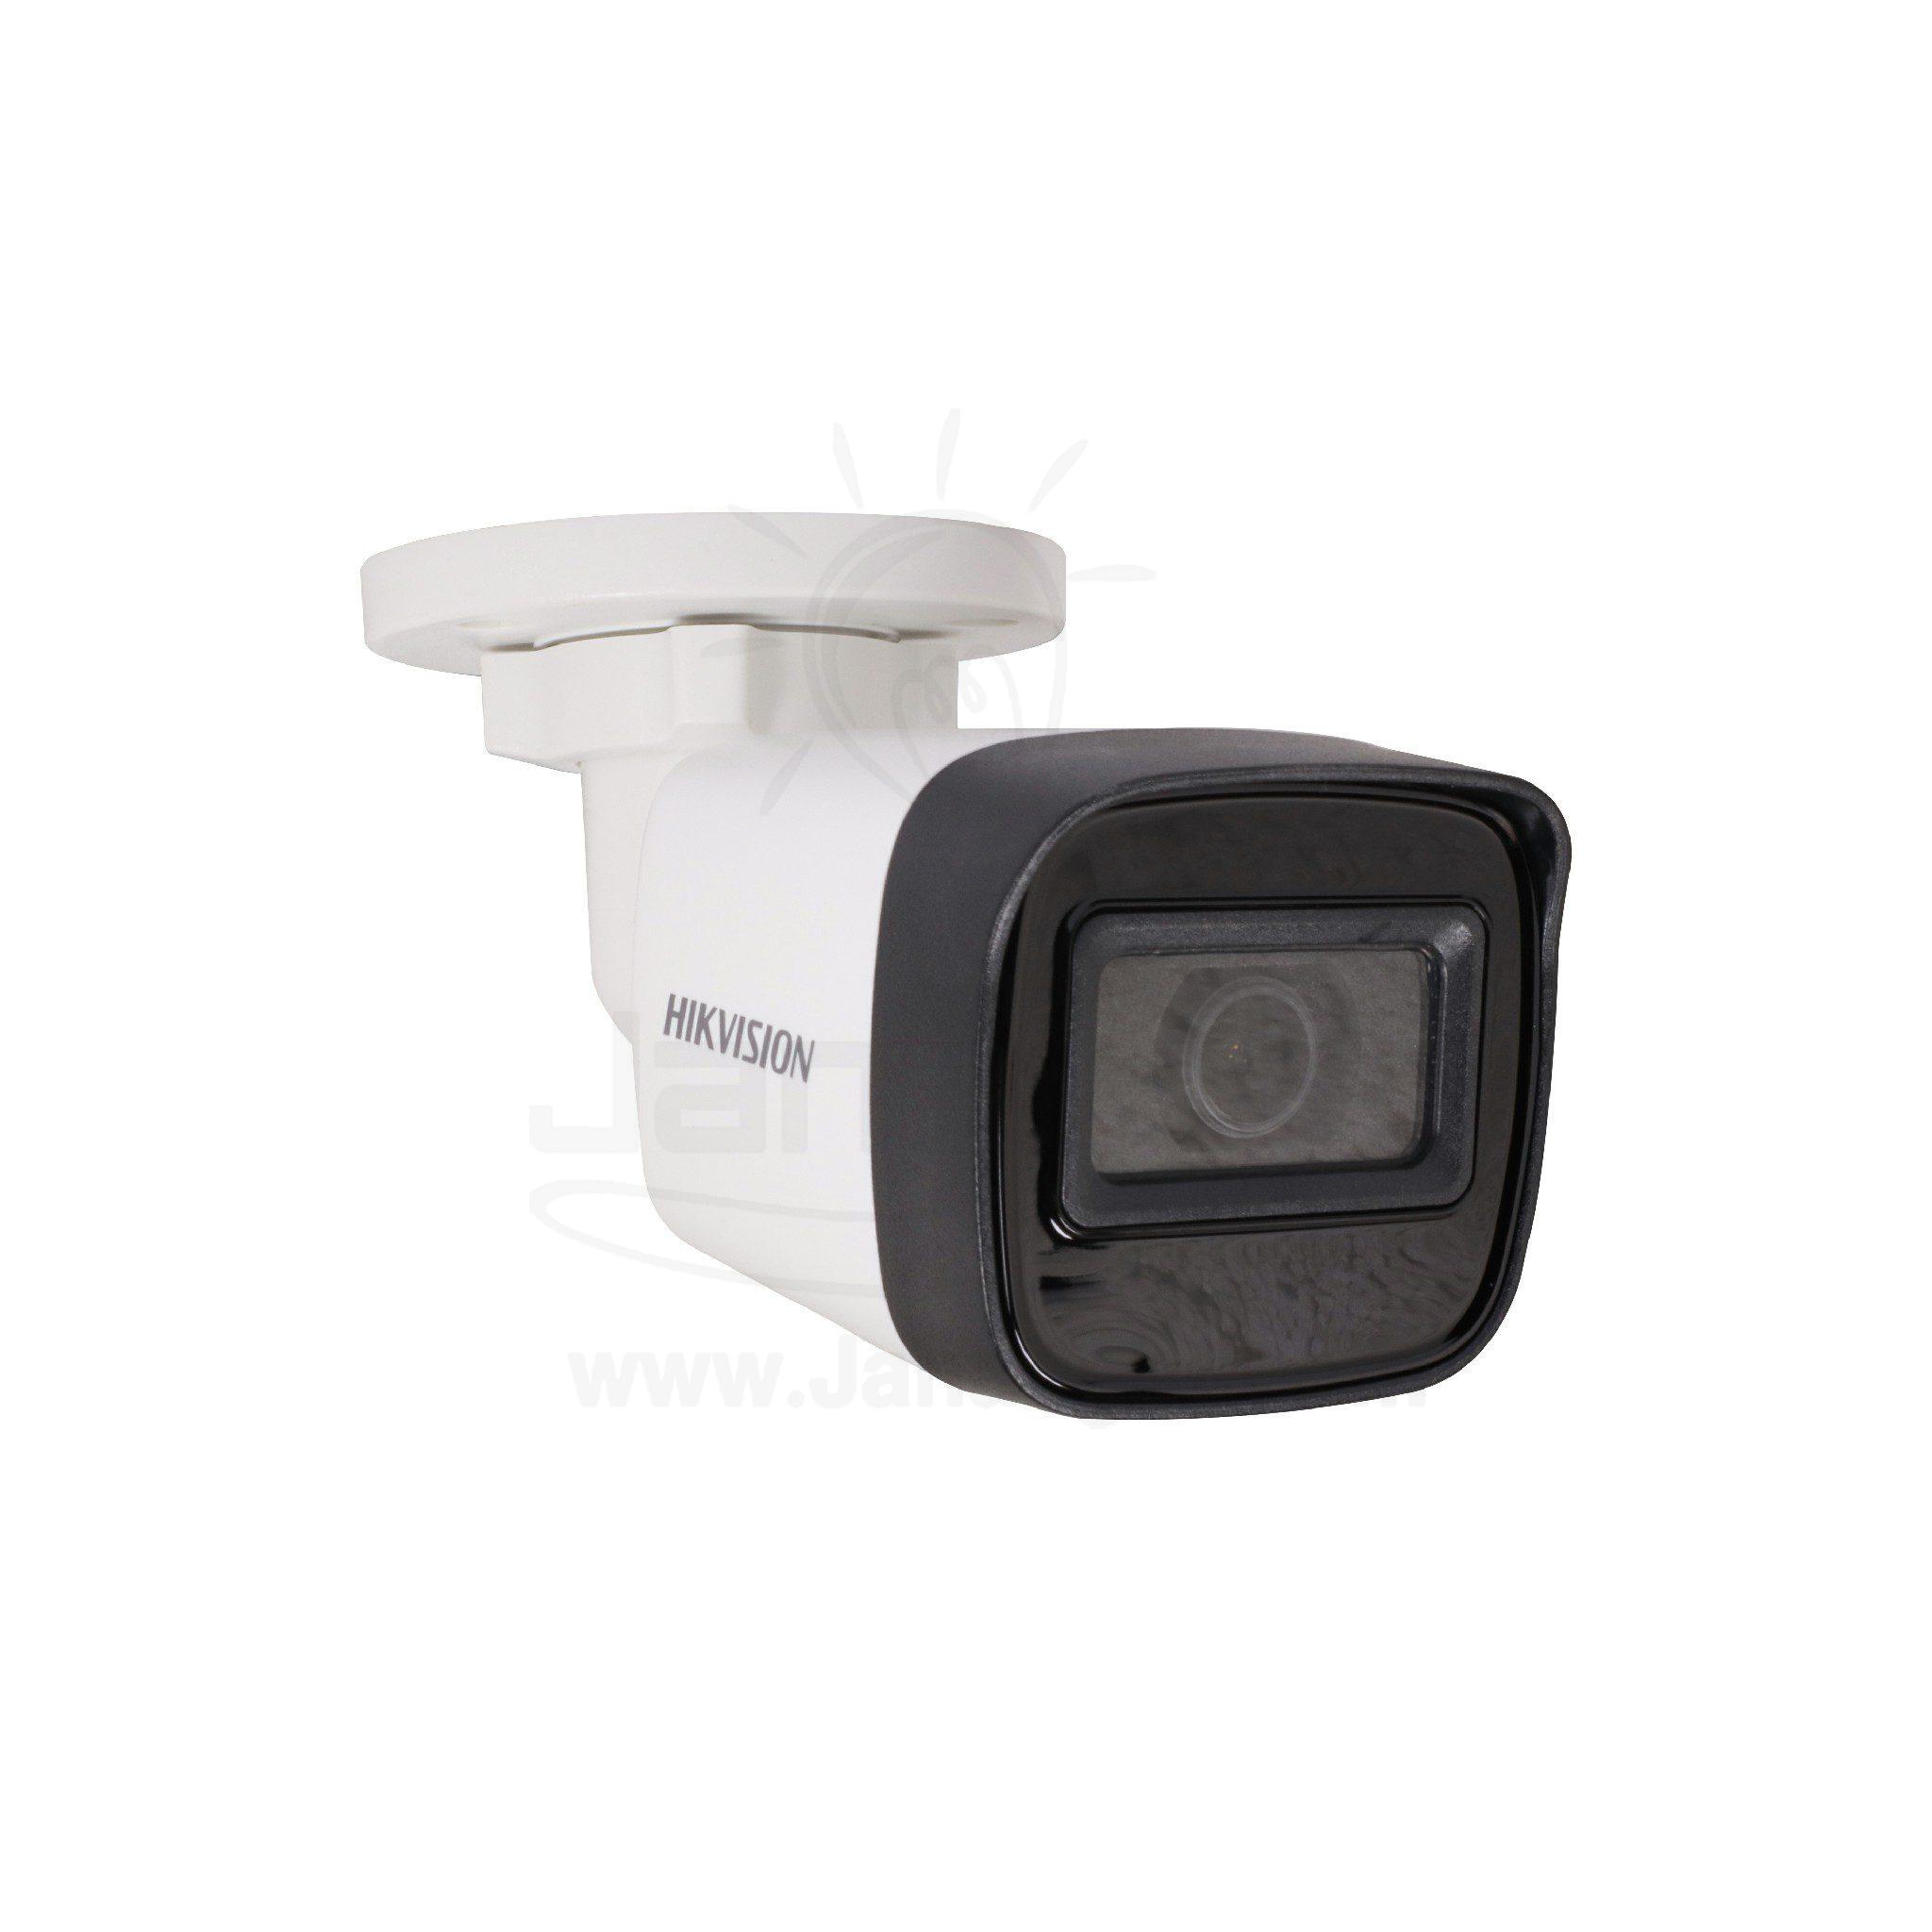 كاميرا خارجية HD هيكفيجن 2MP مع مايك DS-2CE16D0T-ITPF 012214 Hikvision DS-2CE16 DOT-I External Camera 3.6mm